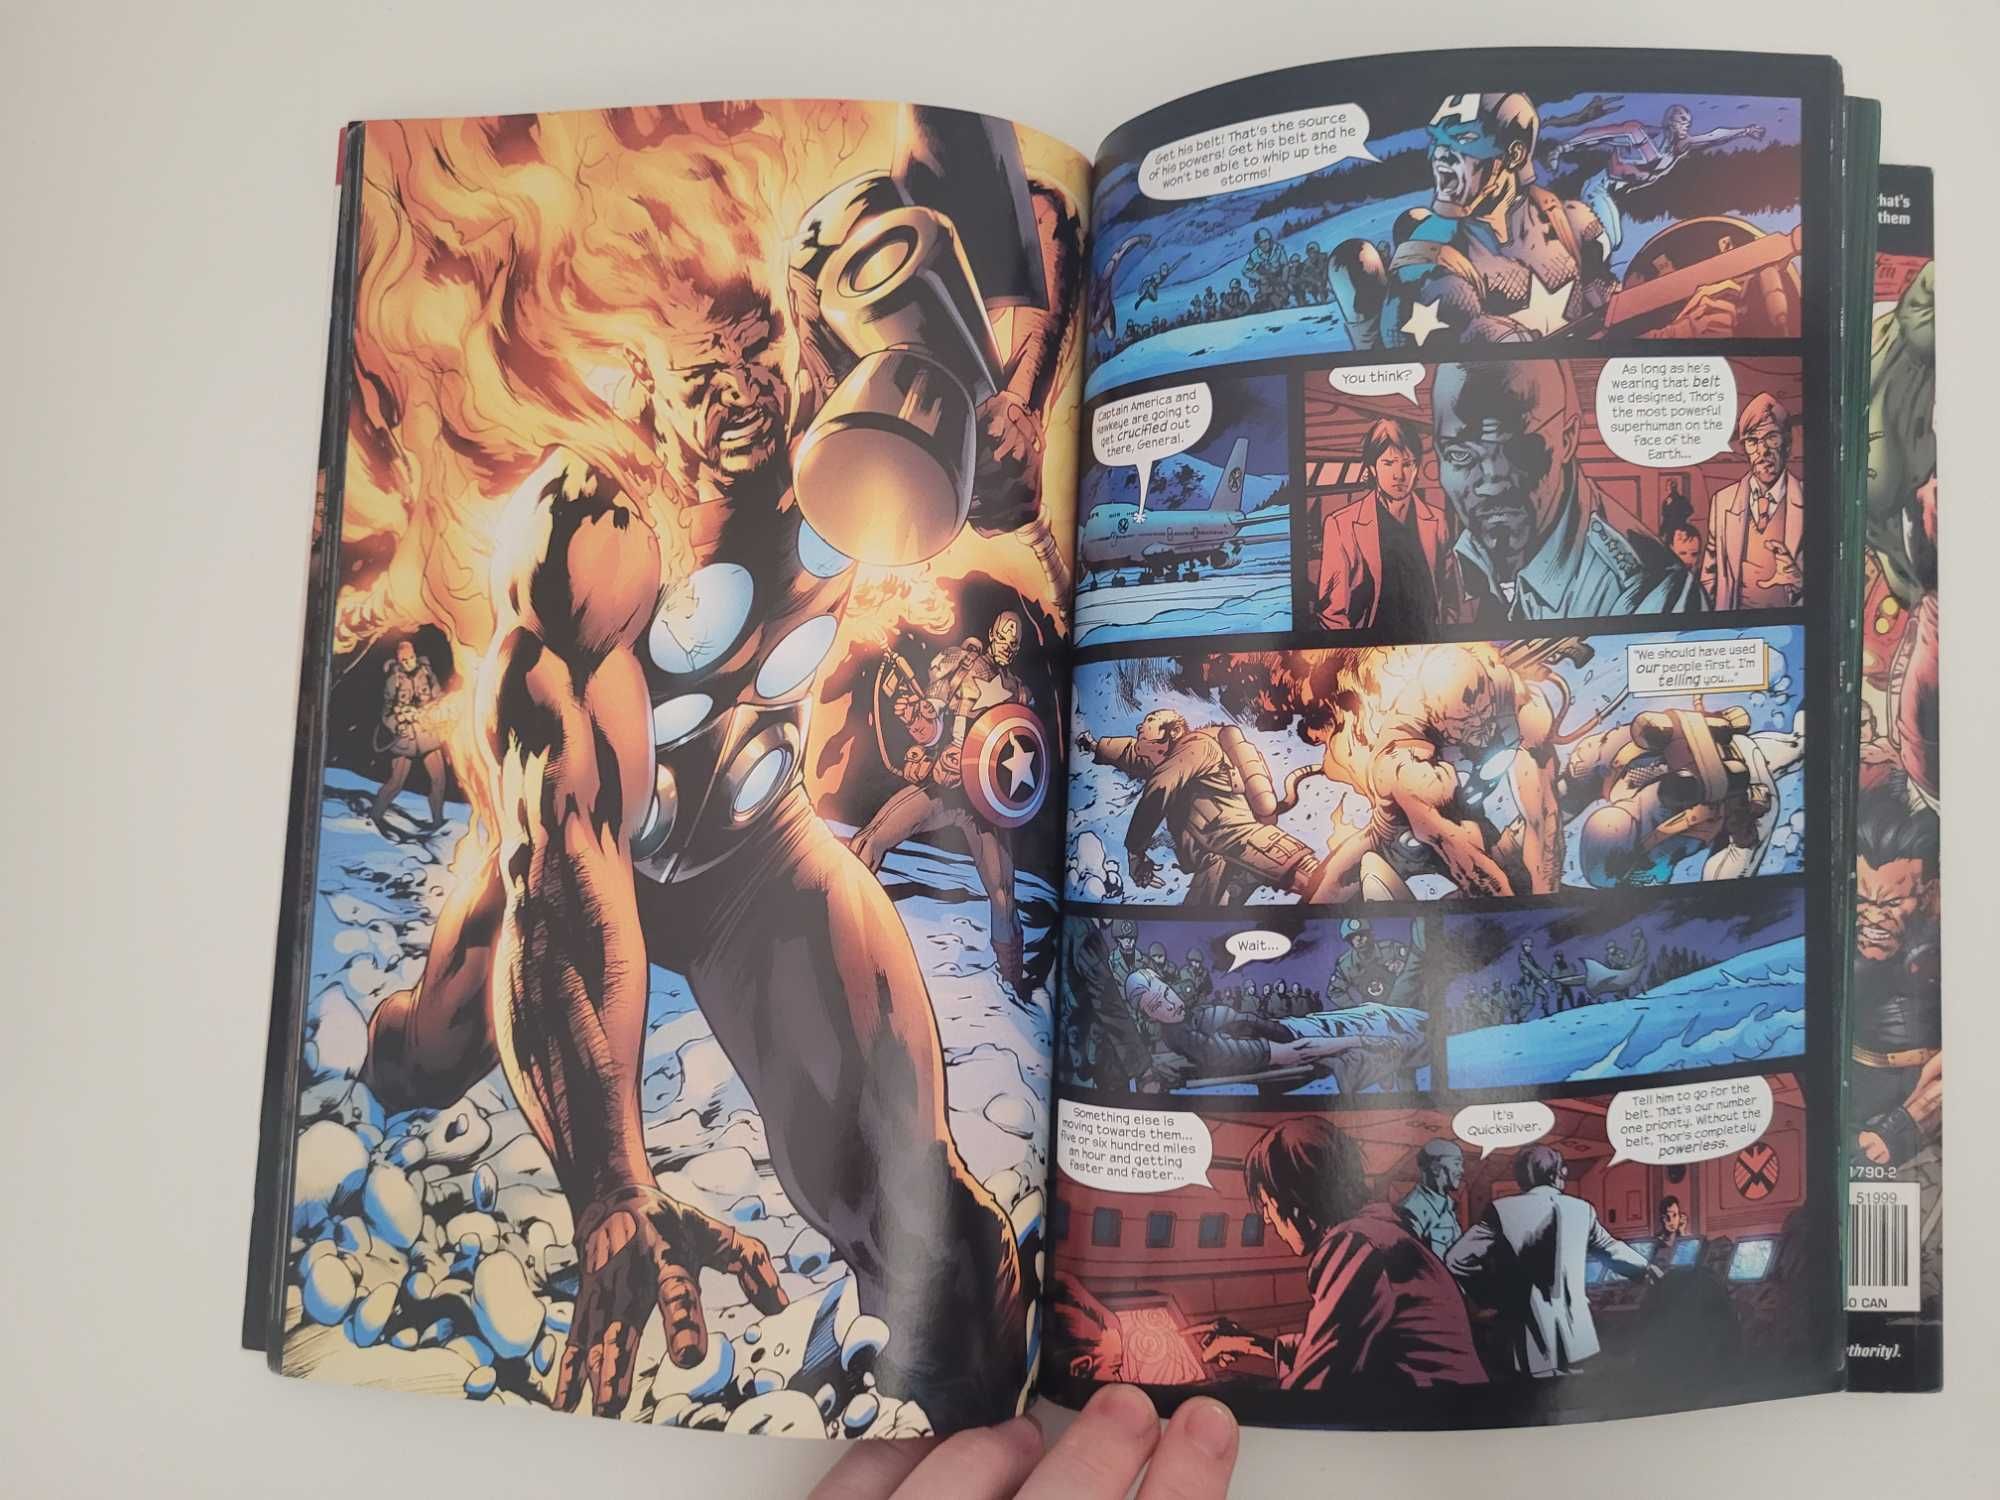 Marvel Comic - The Ultimates 2, vol 1&2 + Oferta de extras 15€ TUDO